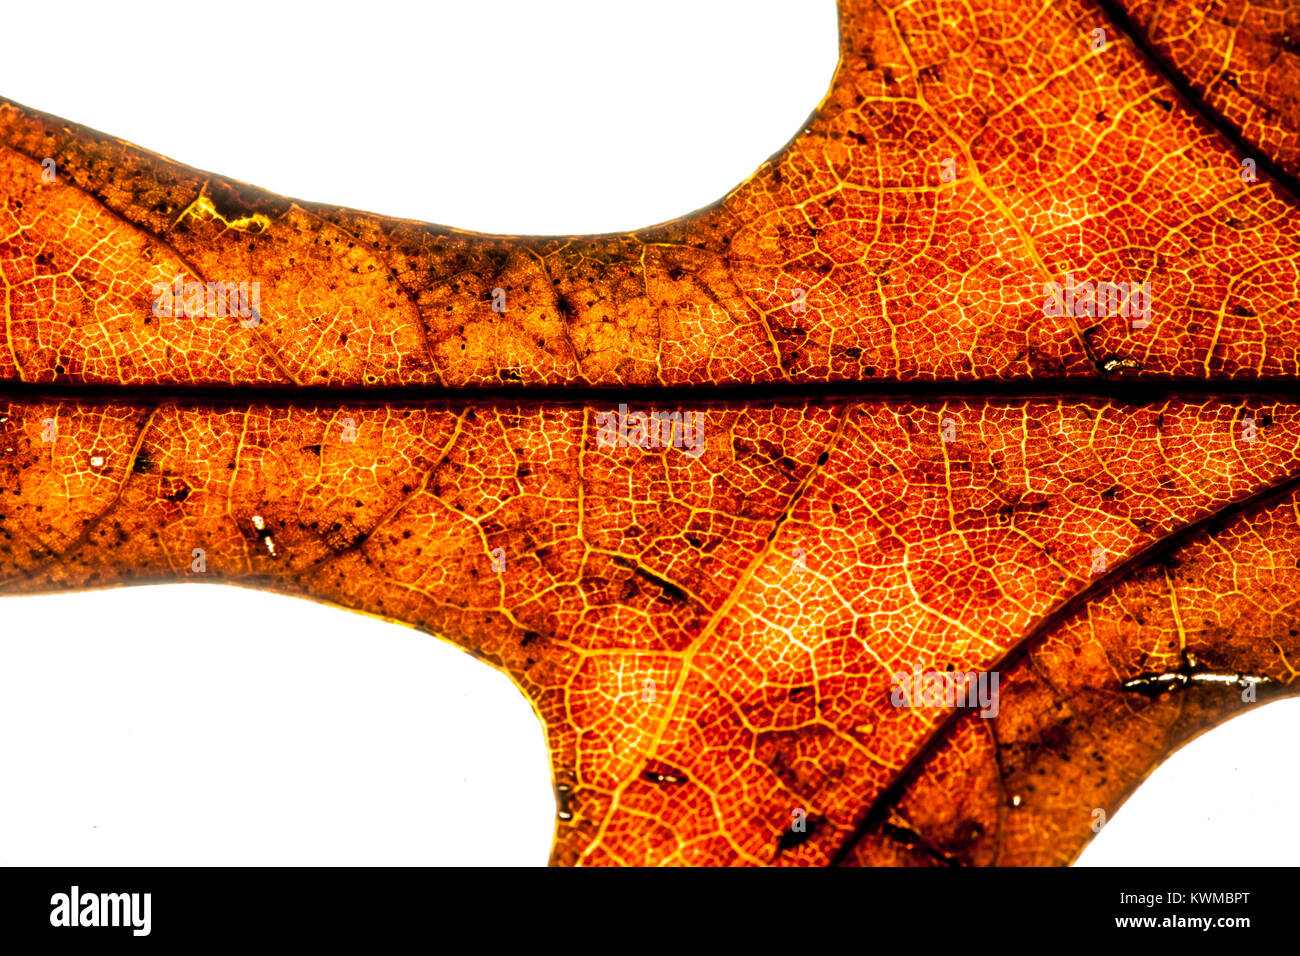 Resumen foto de una hoja de roble seco retroiluminado, revelando células y estructura foliar Foto de stock